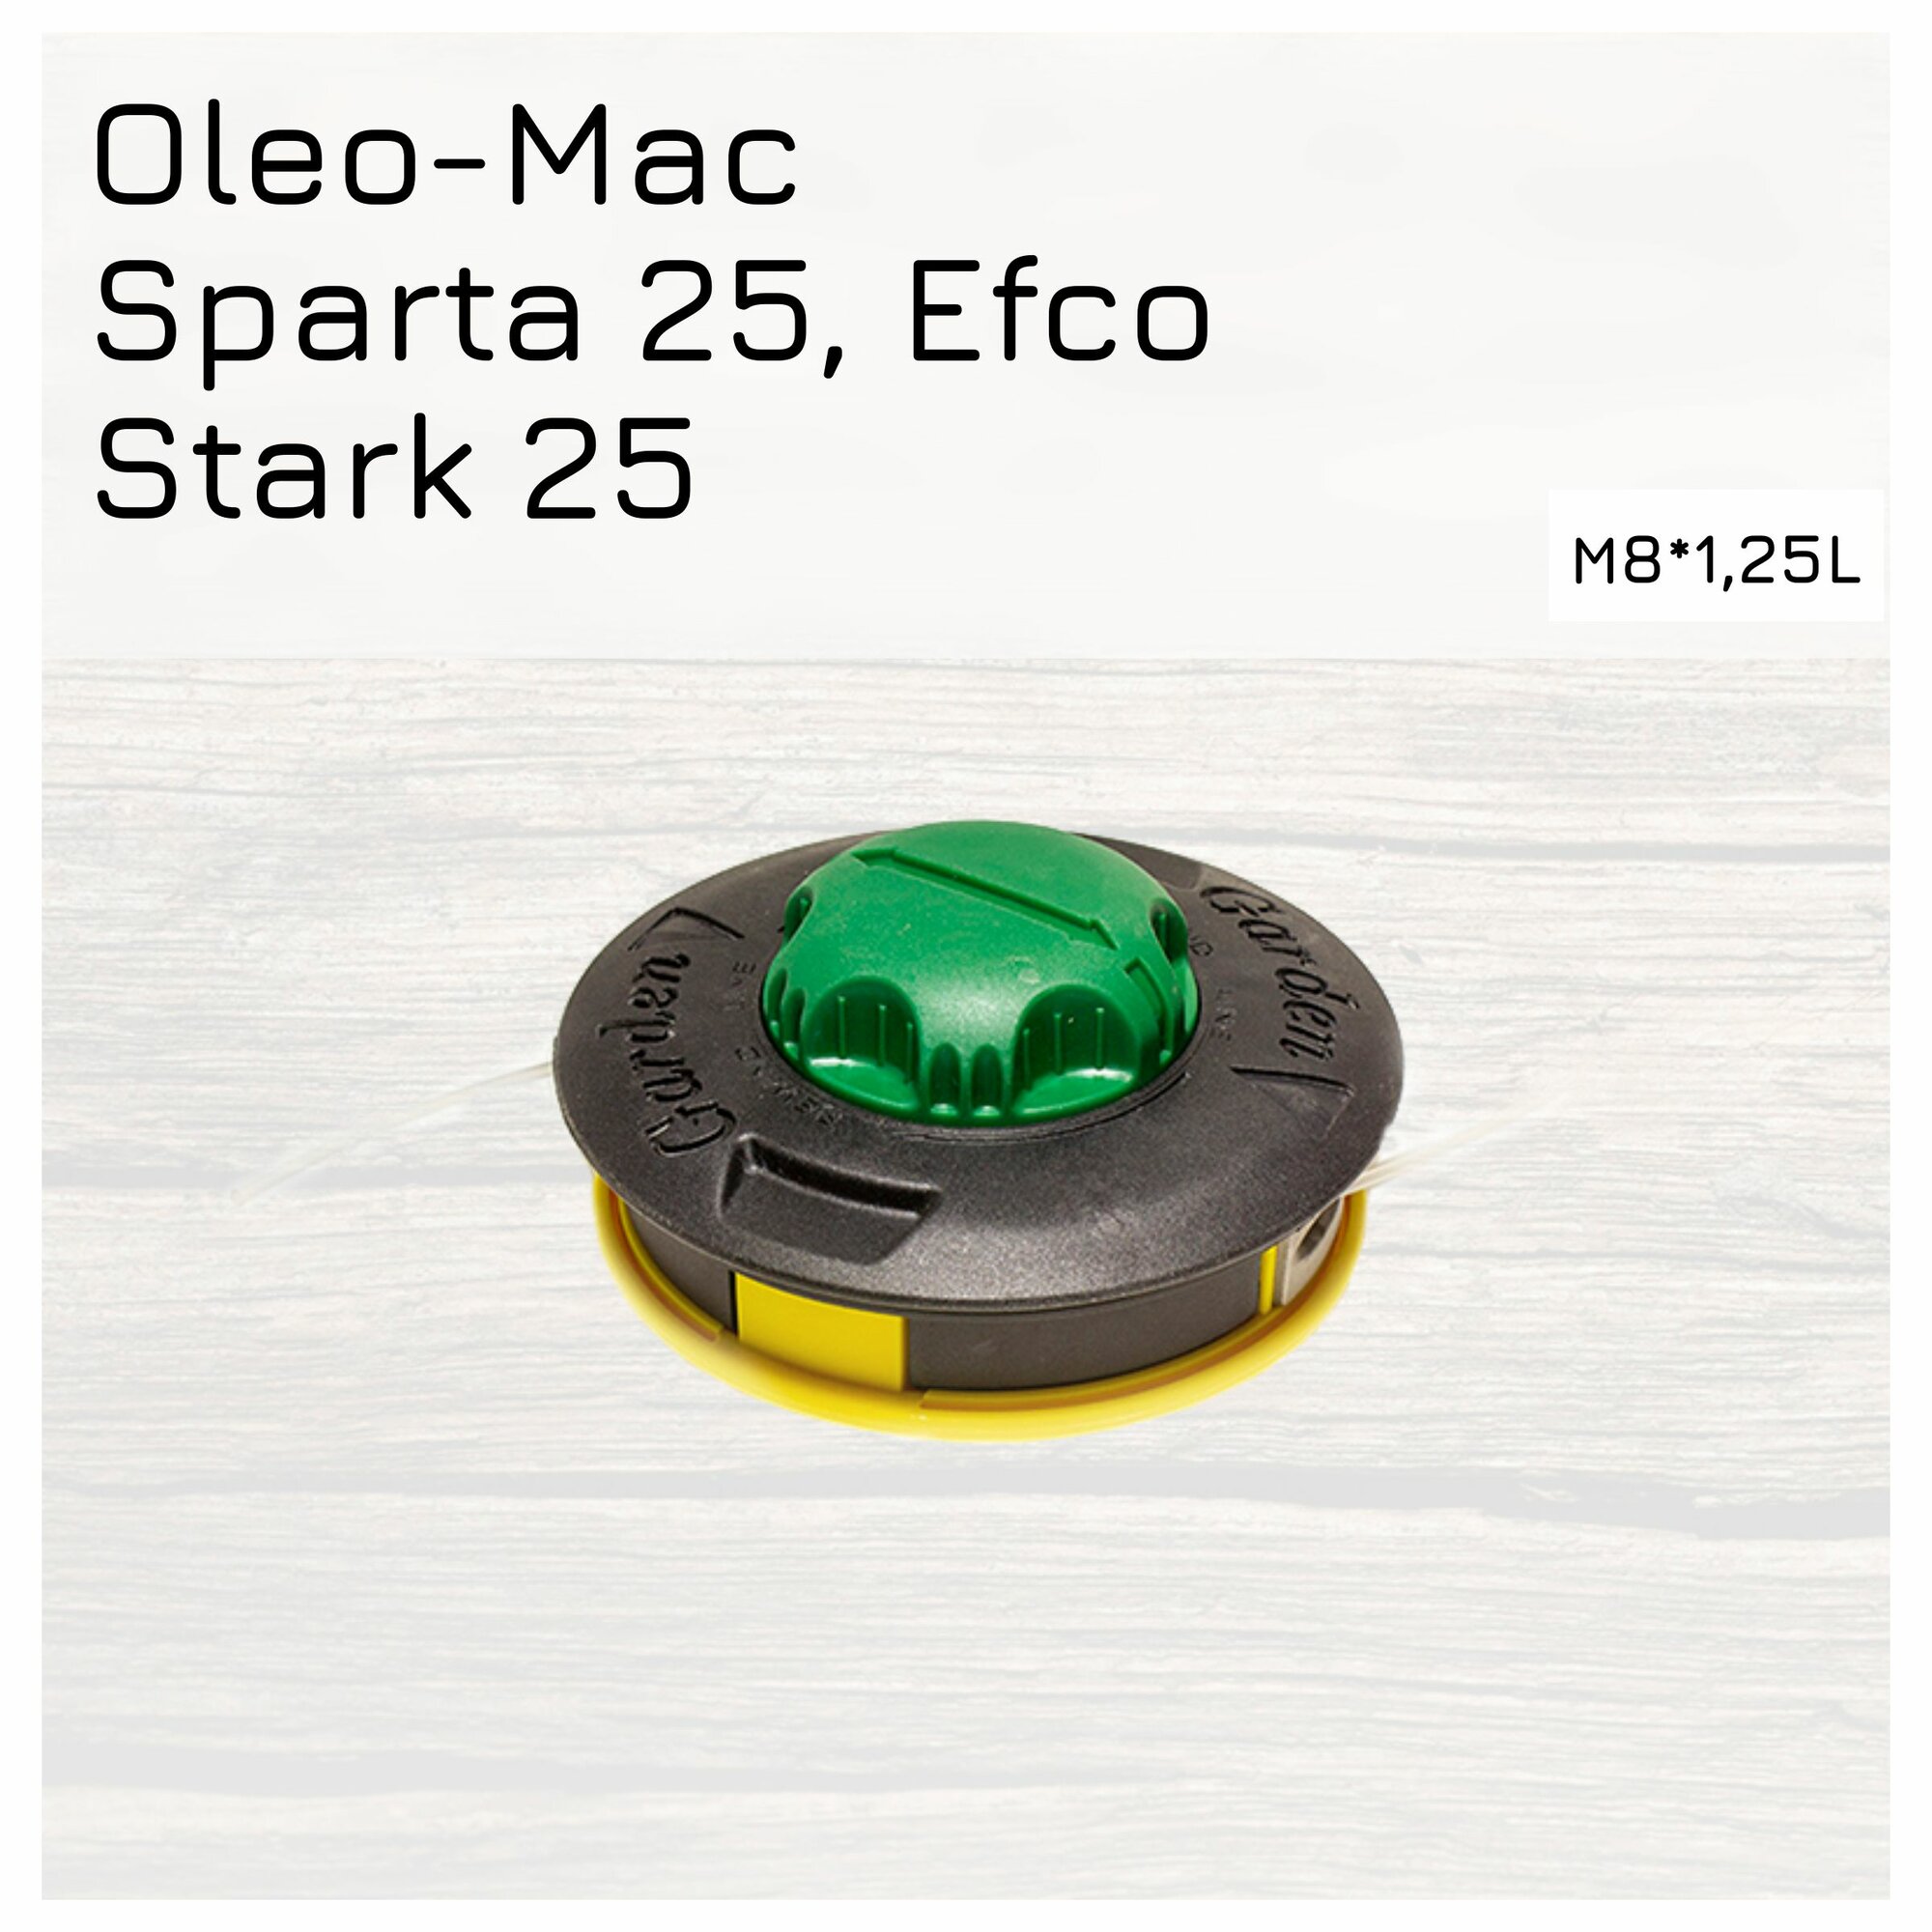 Триммерная головка для мотокос Oleo-Mac Sparta 25, Efco Stark 25 М8*1,25L Улучшенное качество Профессиональная серия